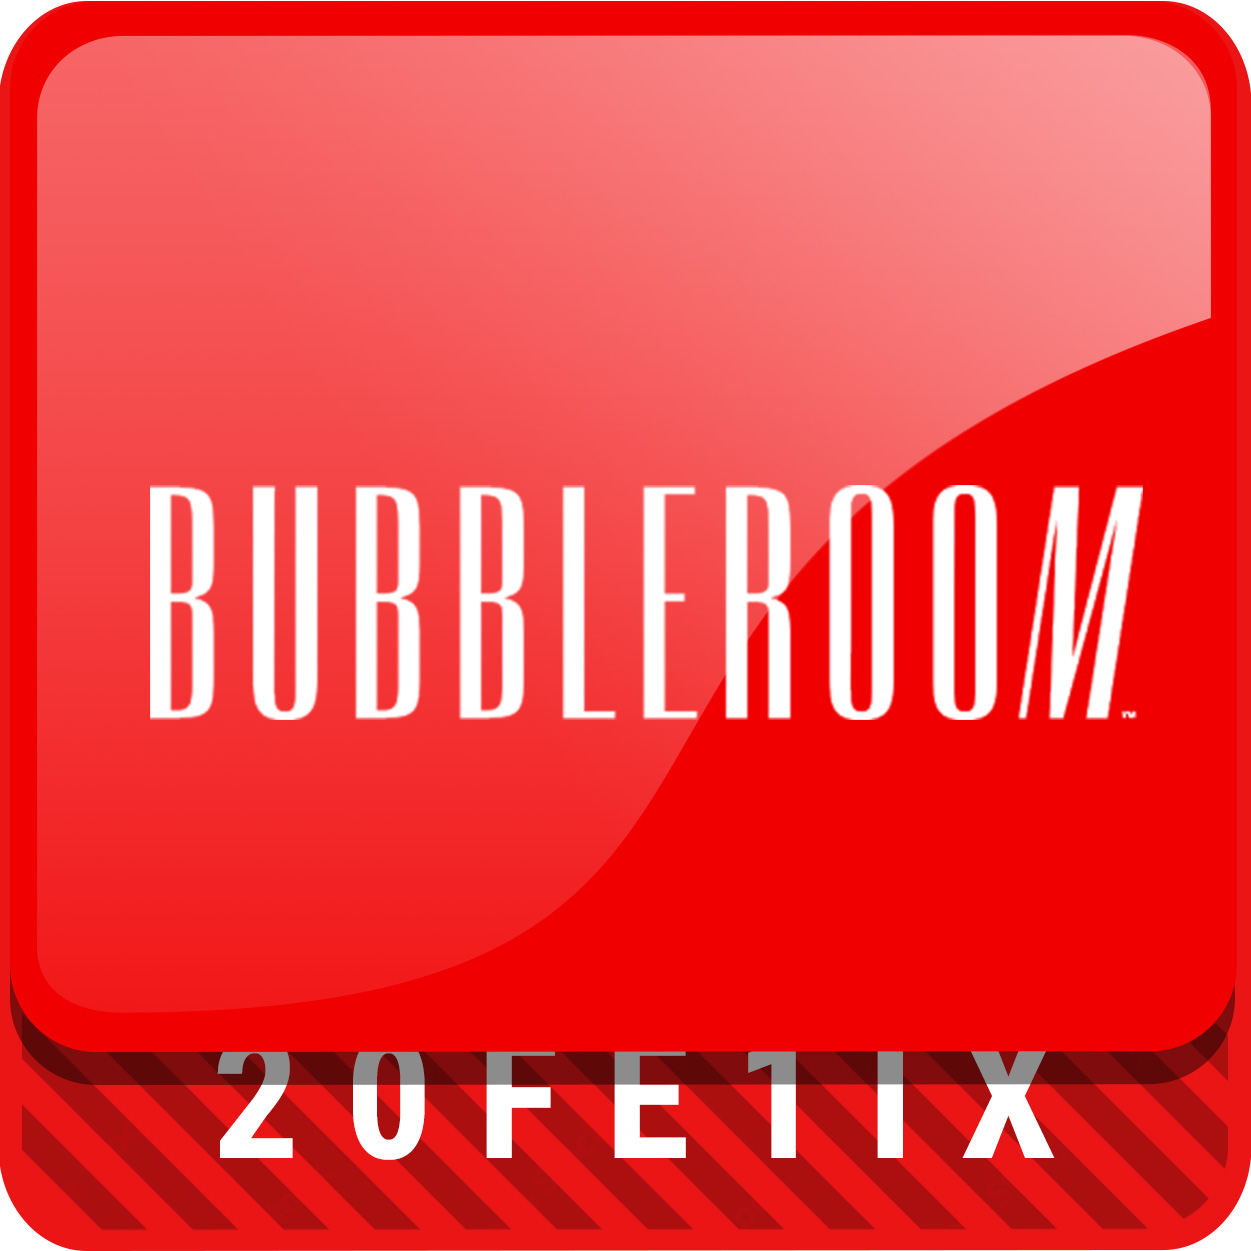 Bubbleroom rabattkod och erbjudanden